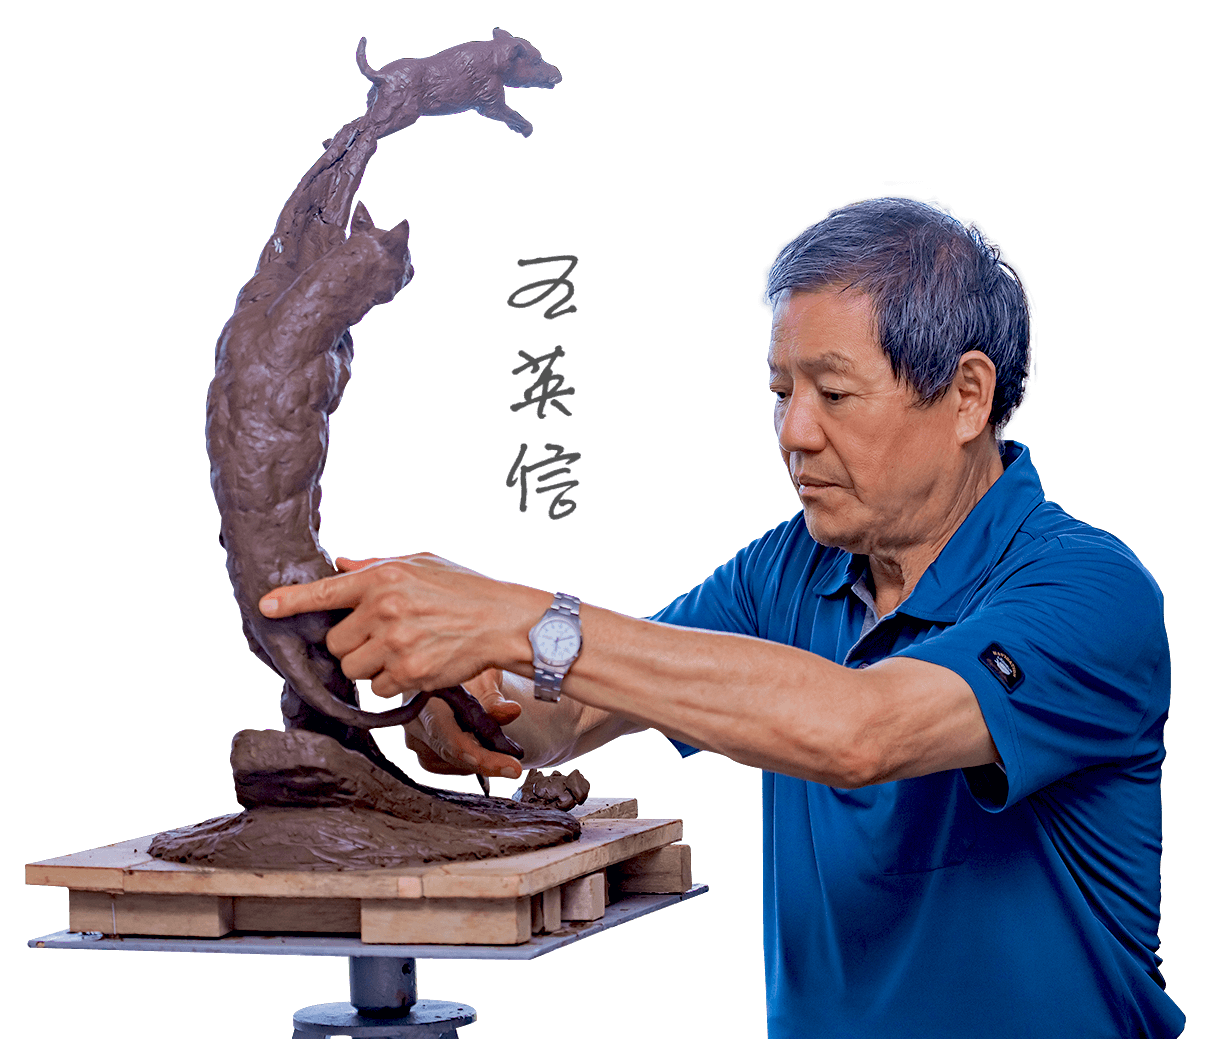 分享藝術帶給生命的美感和喜悅，王英信老師從事雕塑已三十餘年不曾停歇